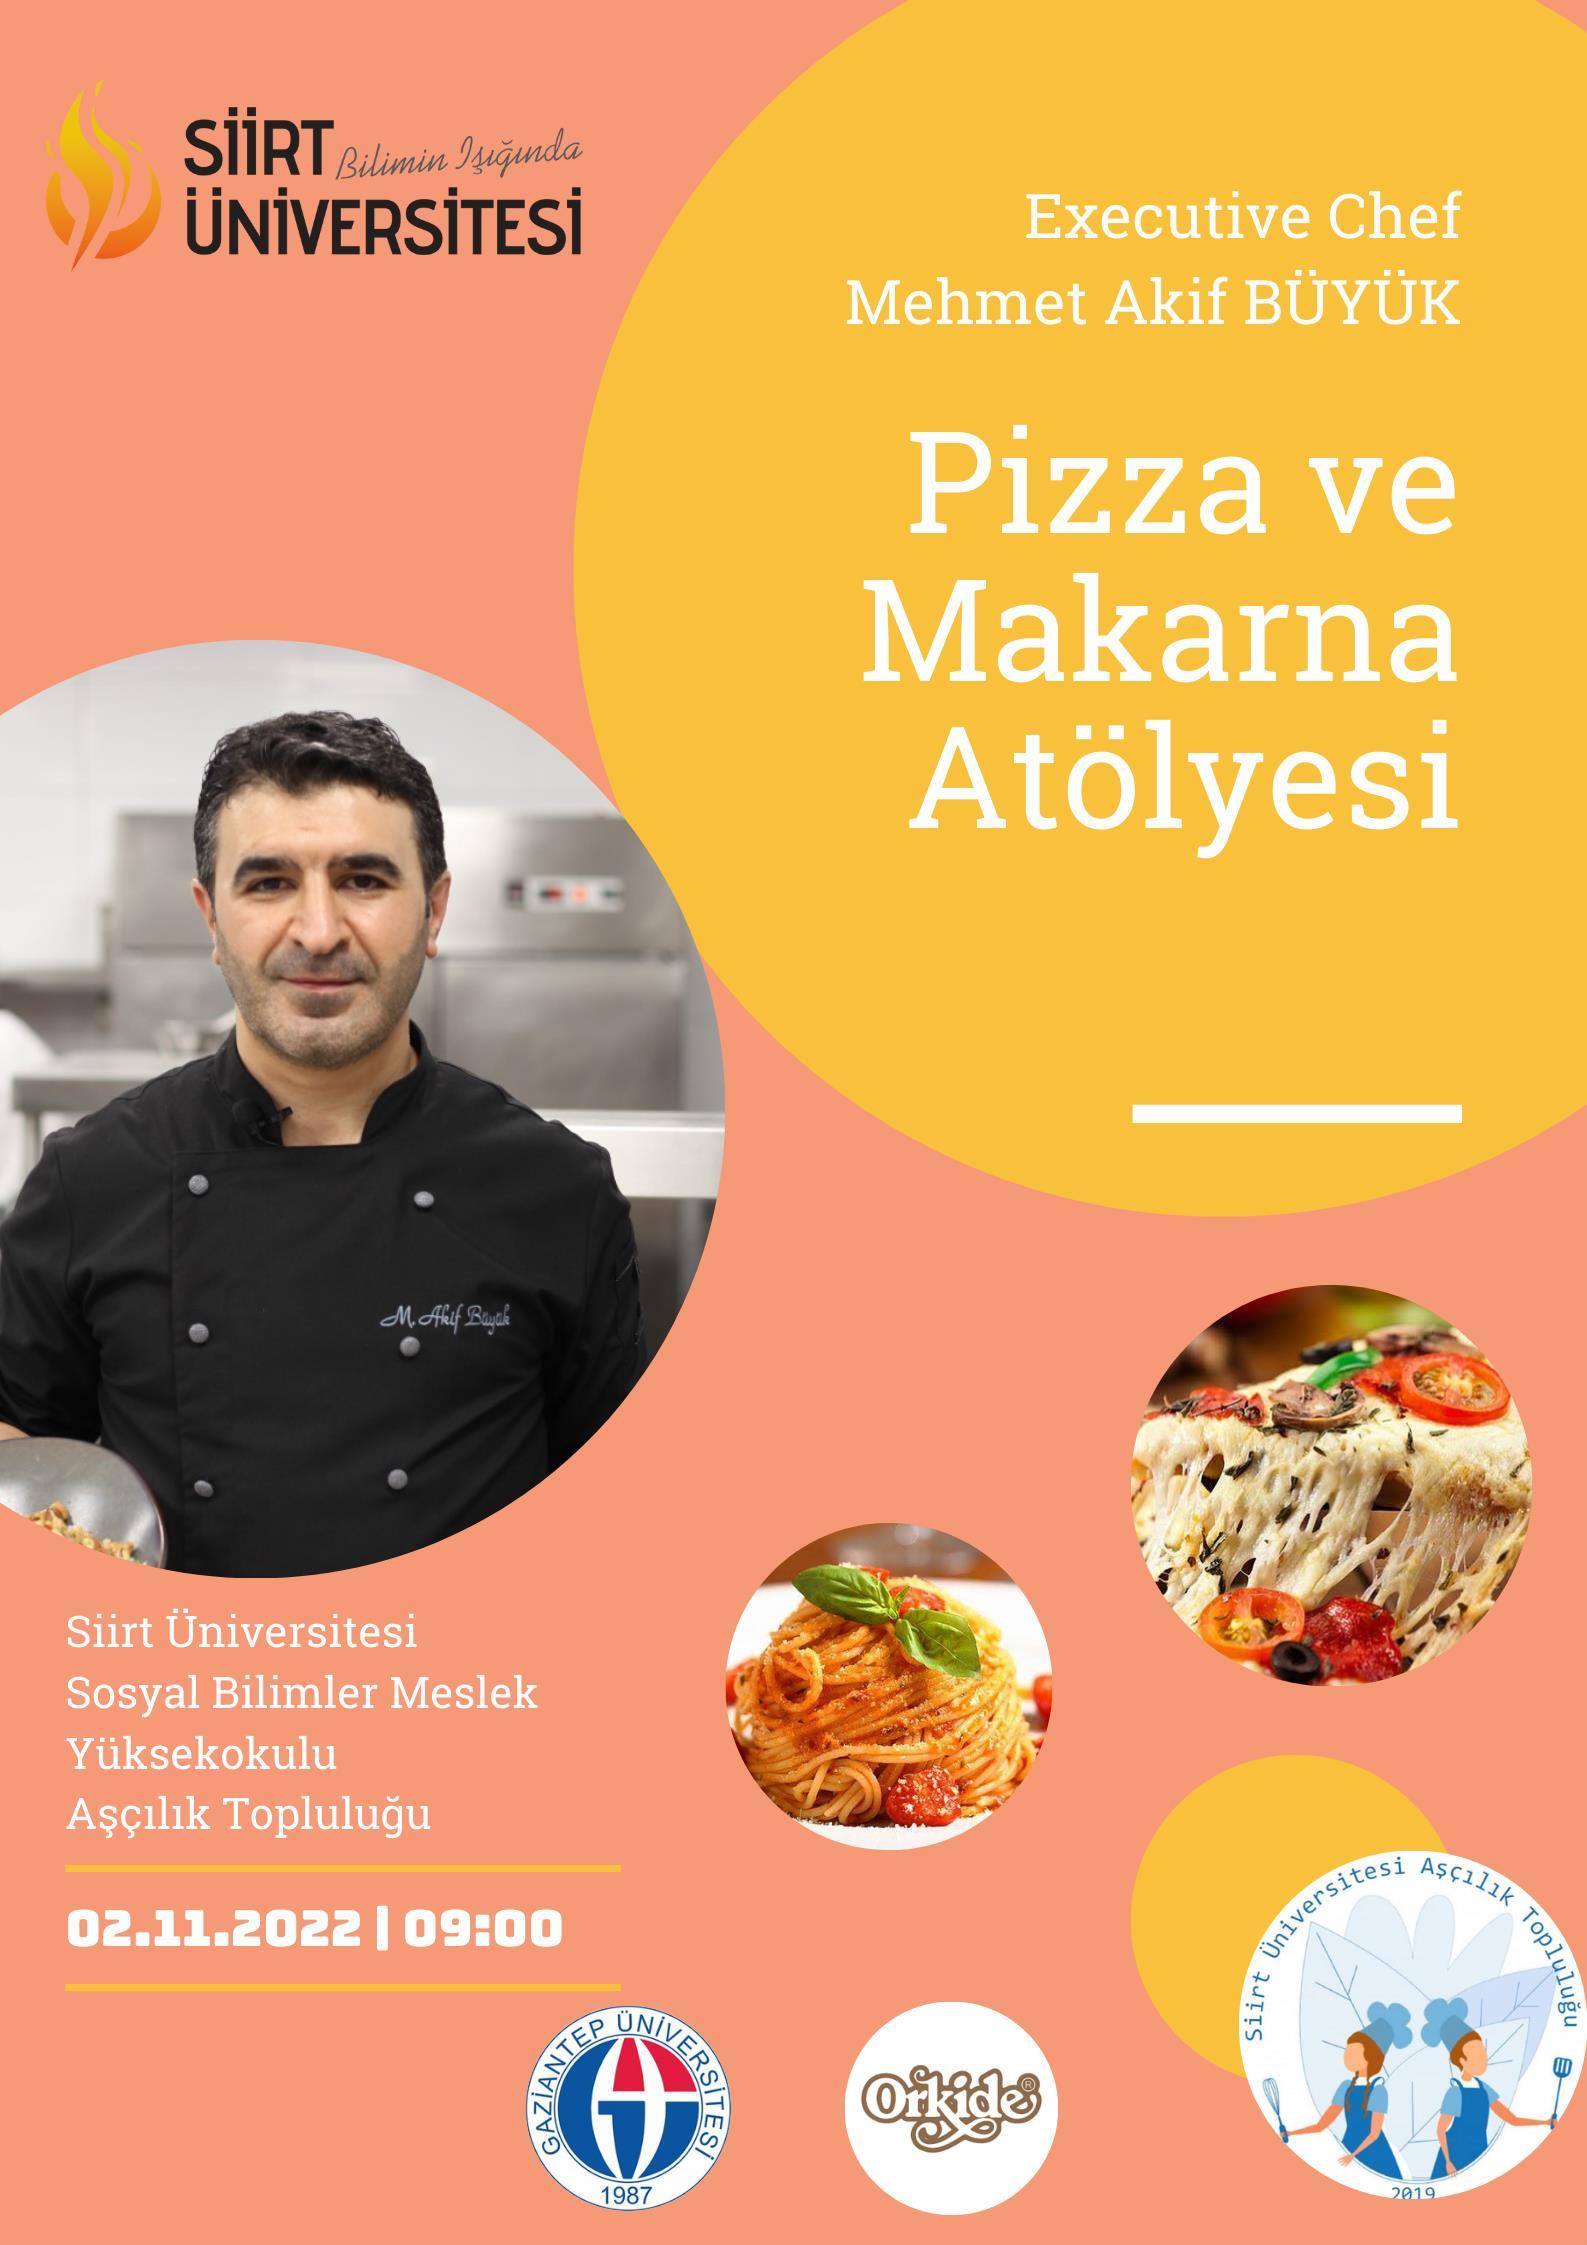 Aşçılık Topluluğu tarafından Executive Chef Mehmet Akif BÜYÜKün katılımıyla 